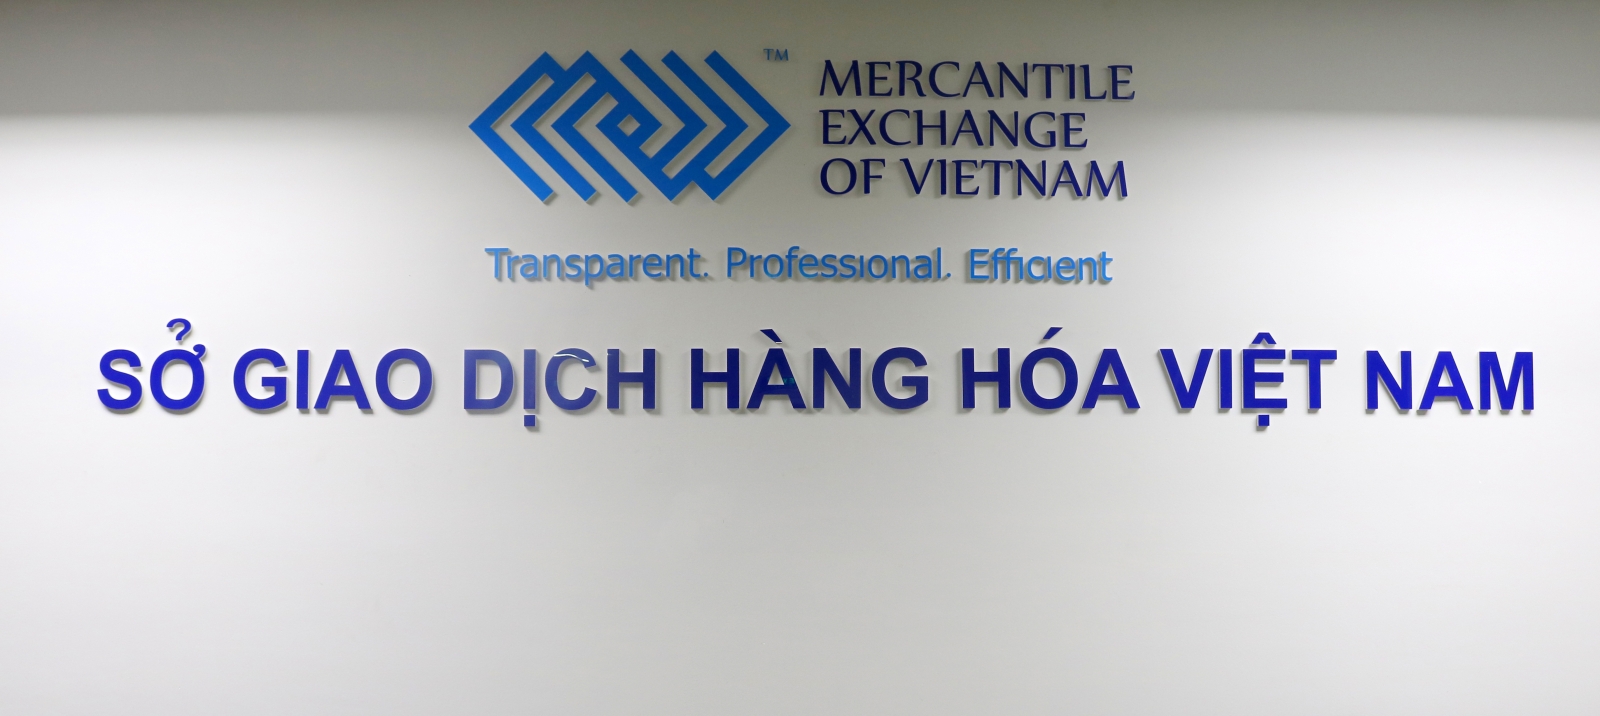 MXV đã nhận được hồ sơ chấm dứt tư cách thành viên tự nguyện của Công ty Cổ phần giao dịch hàng hóa Hà Nội